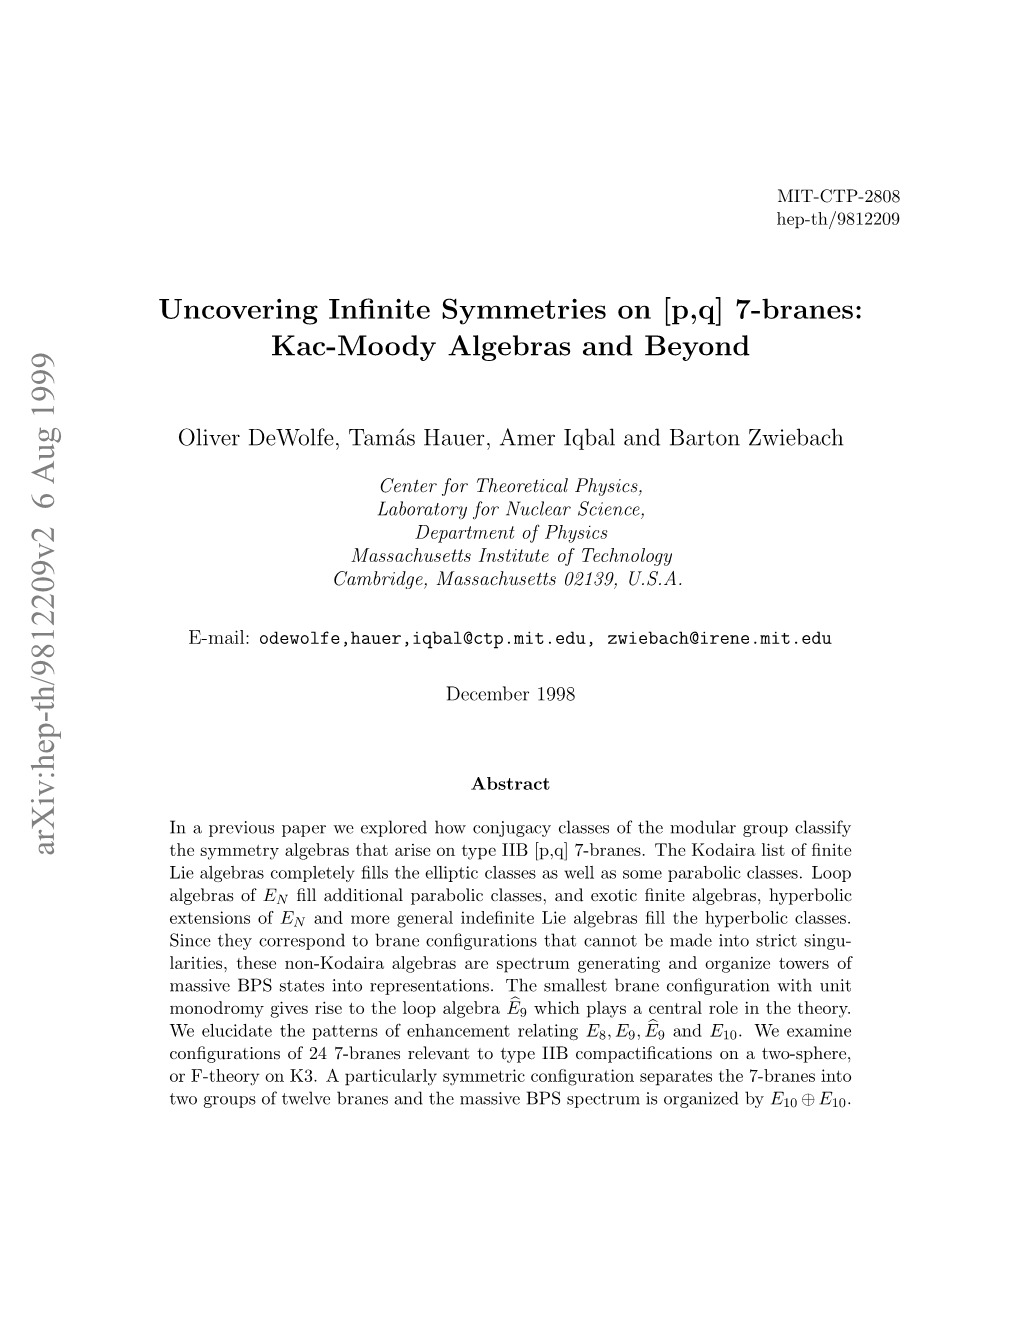 Uncovering Infinite Symmetries on [P, Q] 7-Branes: Kac-Moody Algebras